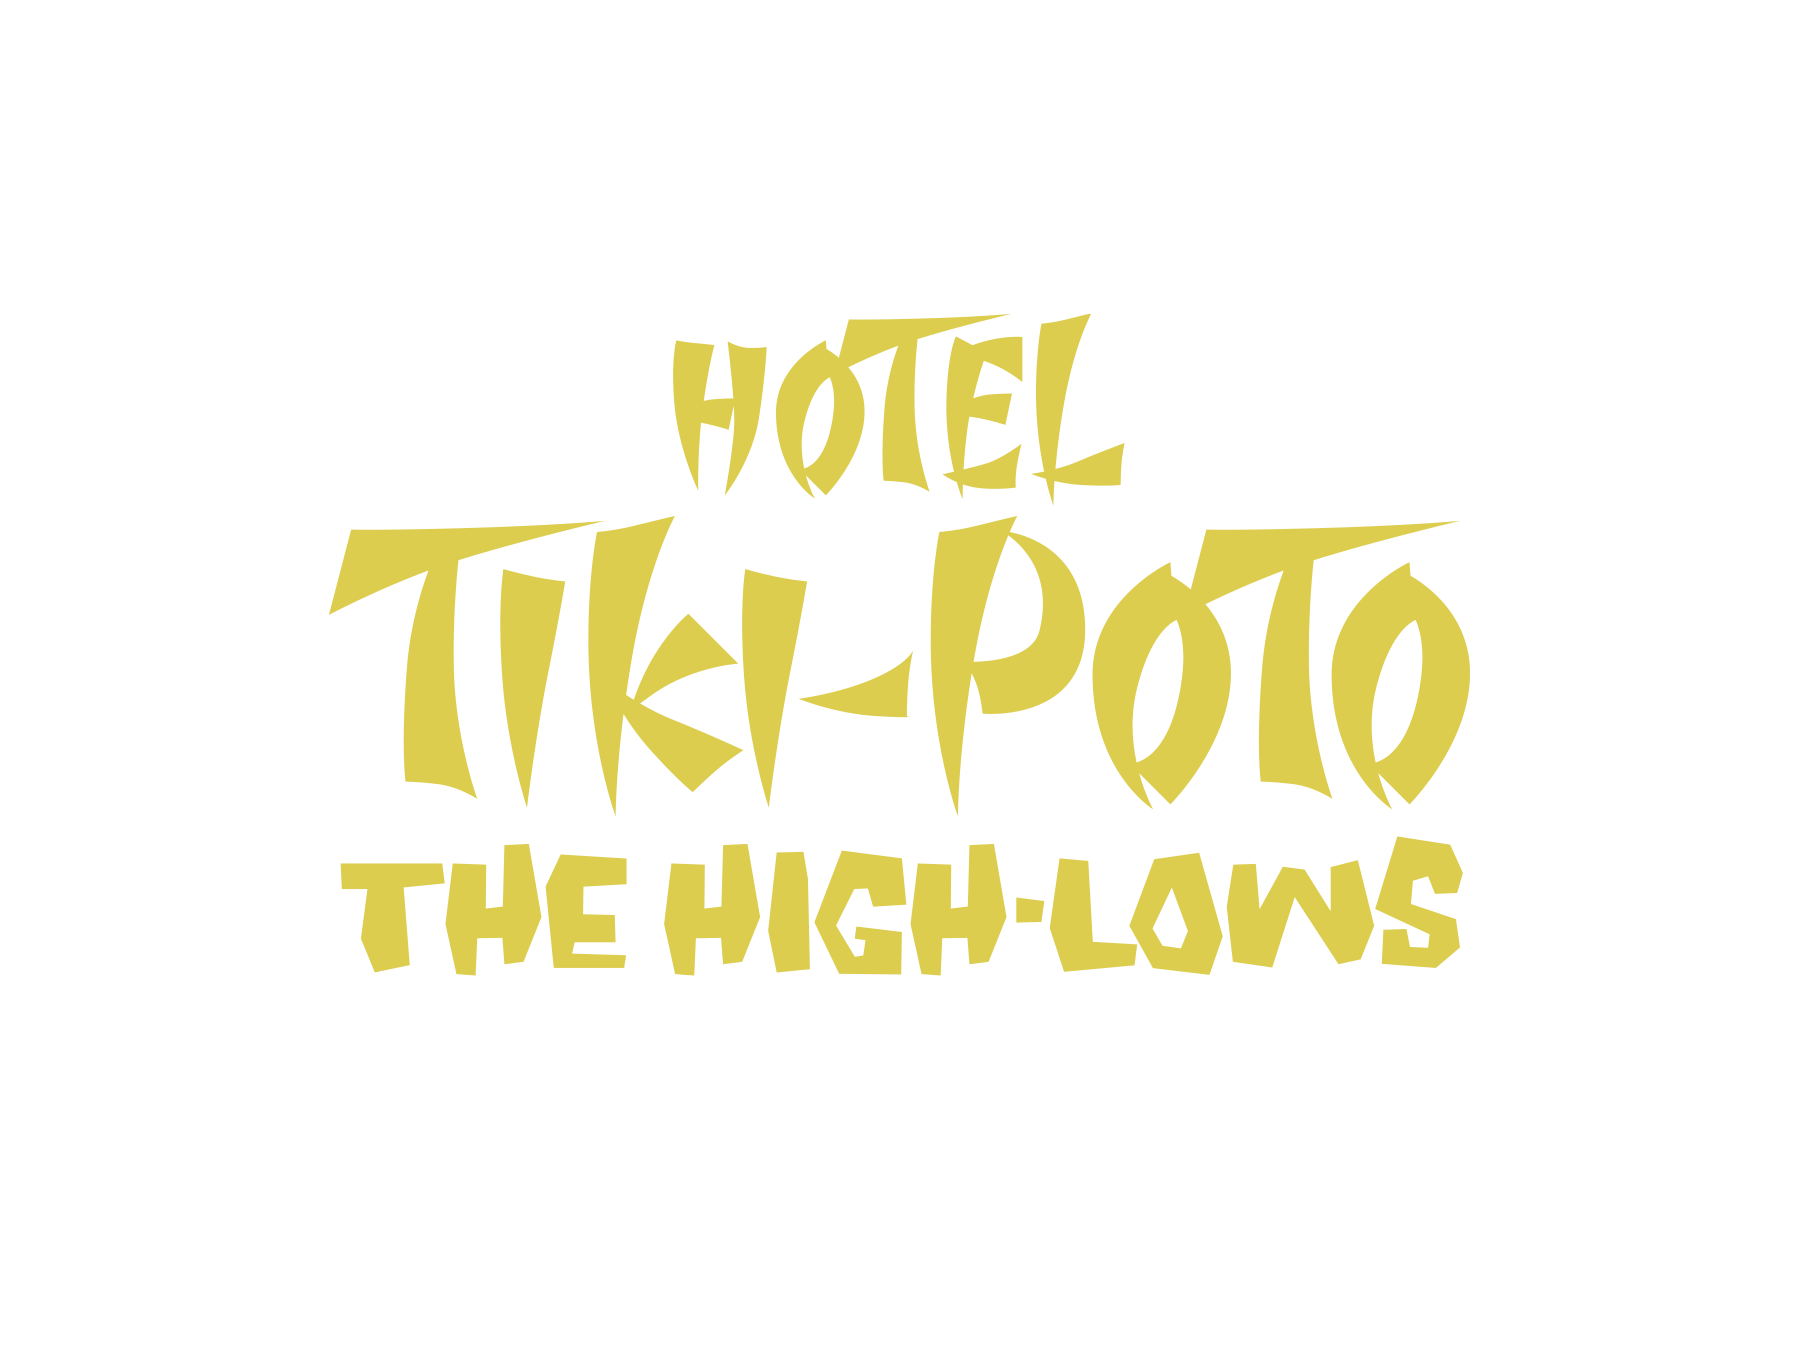 ザ・ハイロウズ 「HOTEL TIKI-POTO」 アルバムコンセプトロゴタイプ